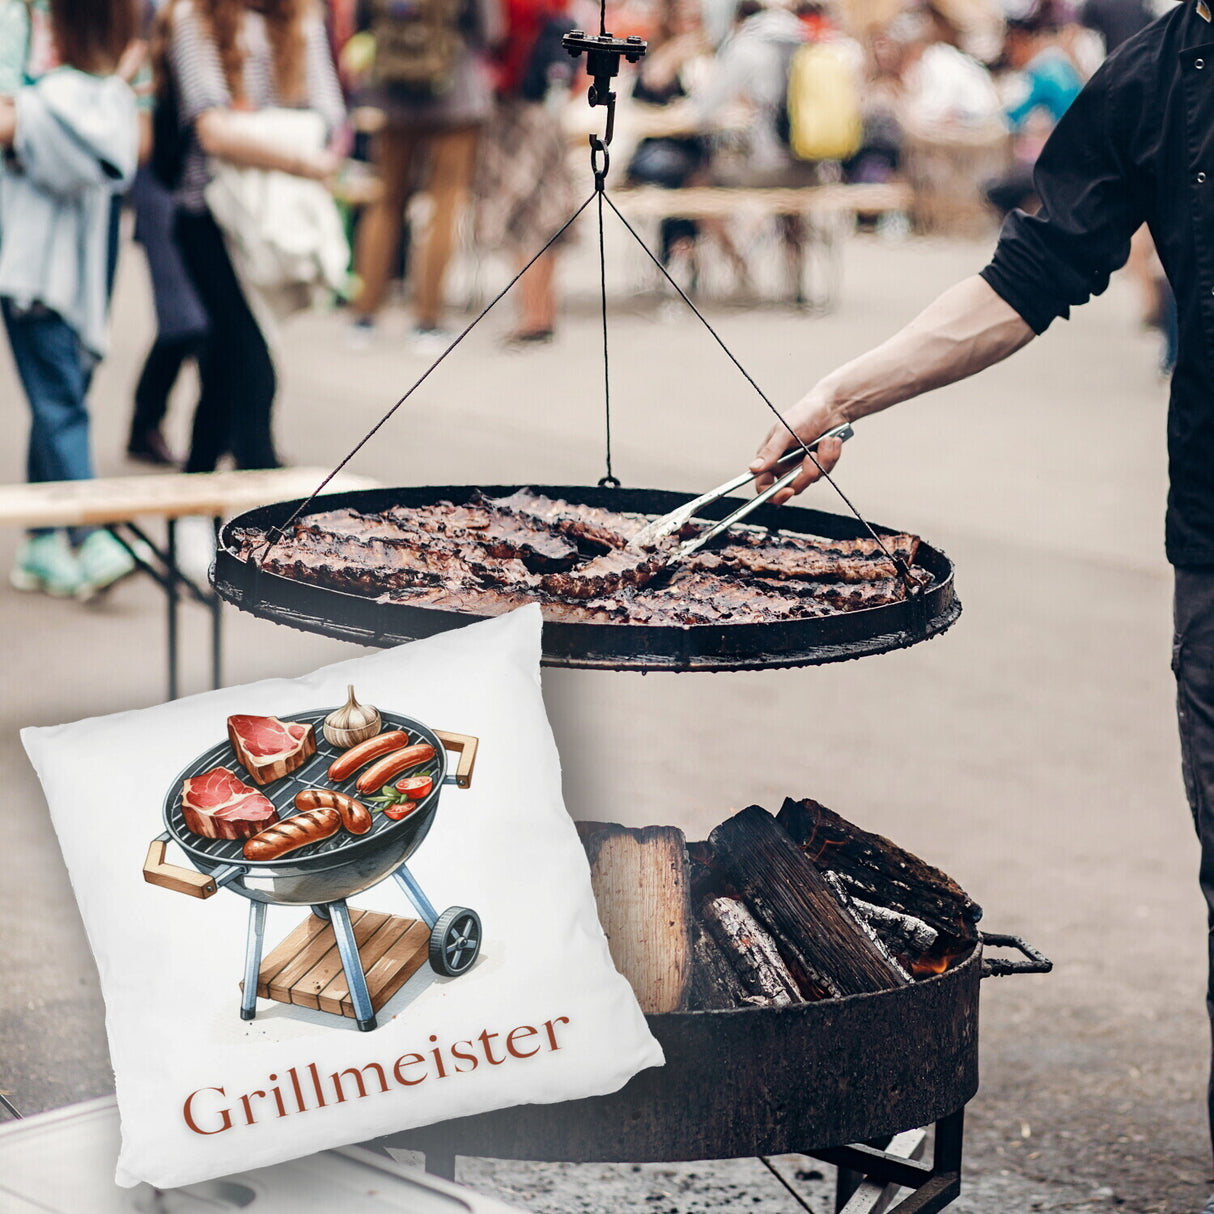 Grillmeister BBQ Kissen